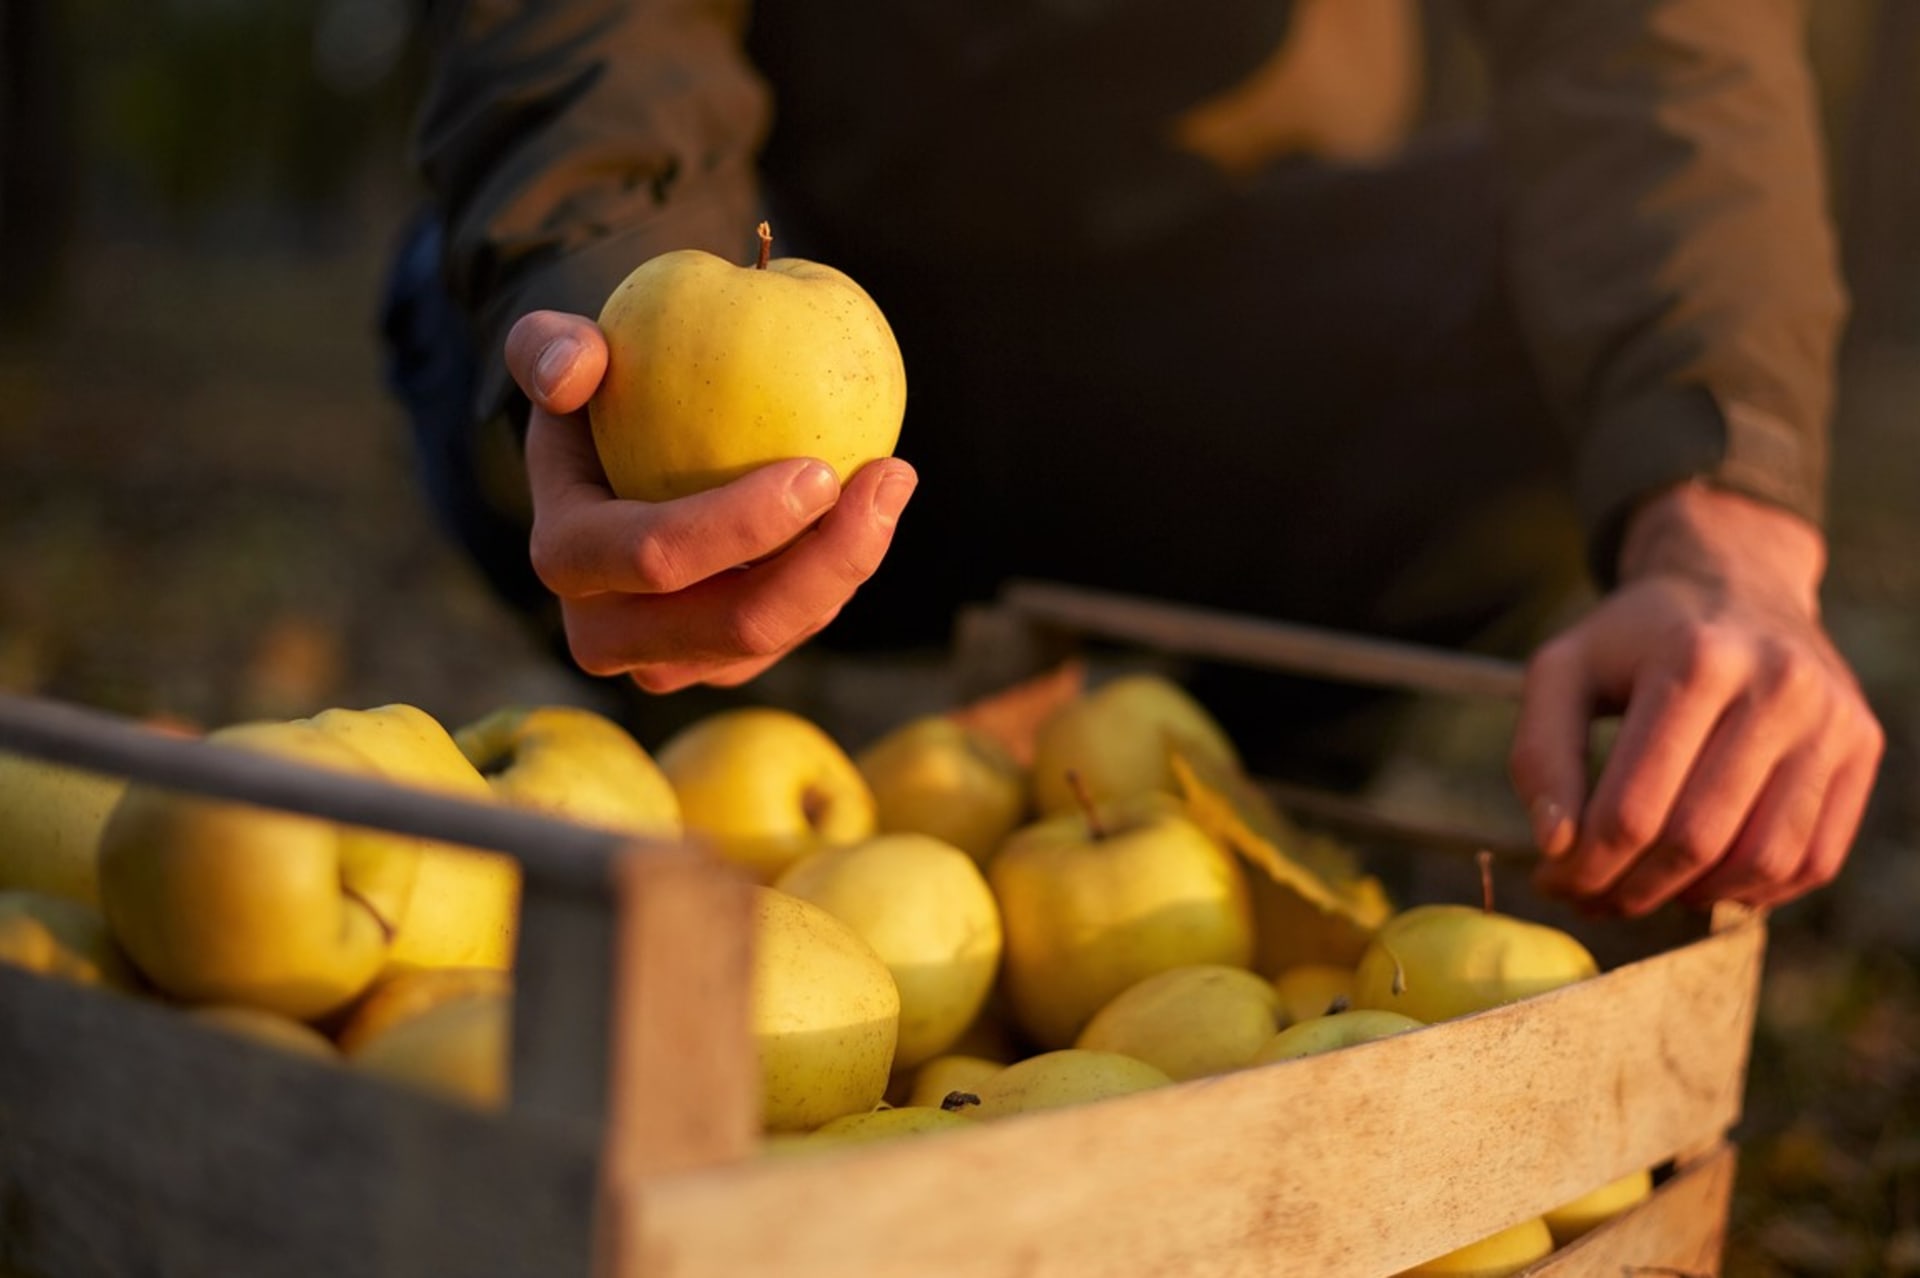 Jablka ze zahrady, která chceme uchovat přes zimu, musí být opatrně trhaná, kvalitní,  stoprocentně zdravá, nepoškozená a se stopkou.